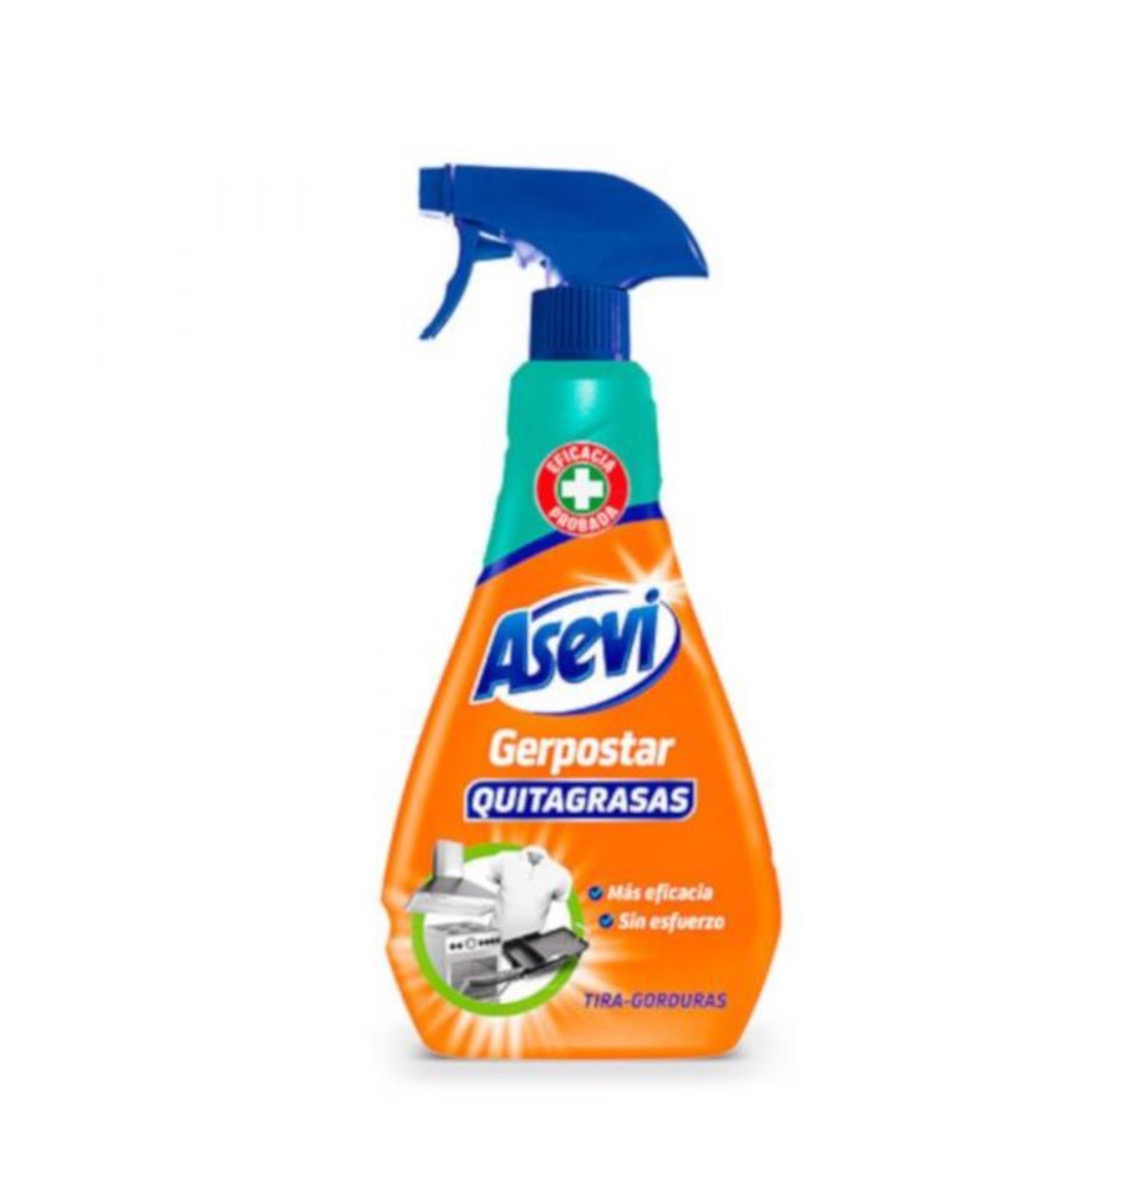 Asevi Degreaser Cleaning Spray